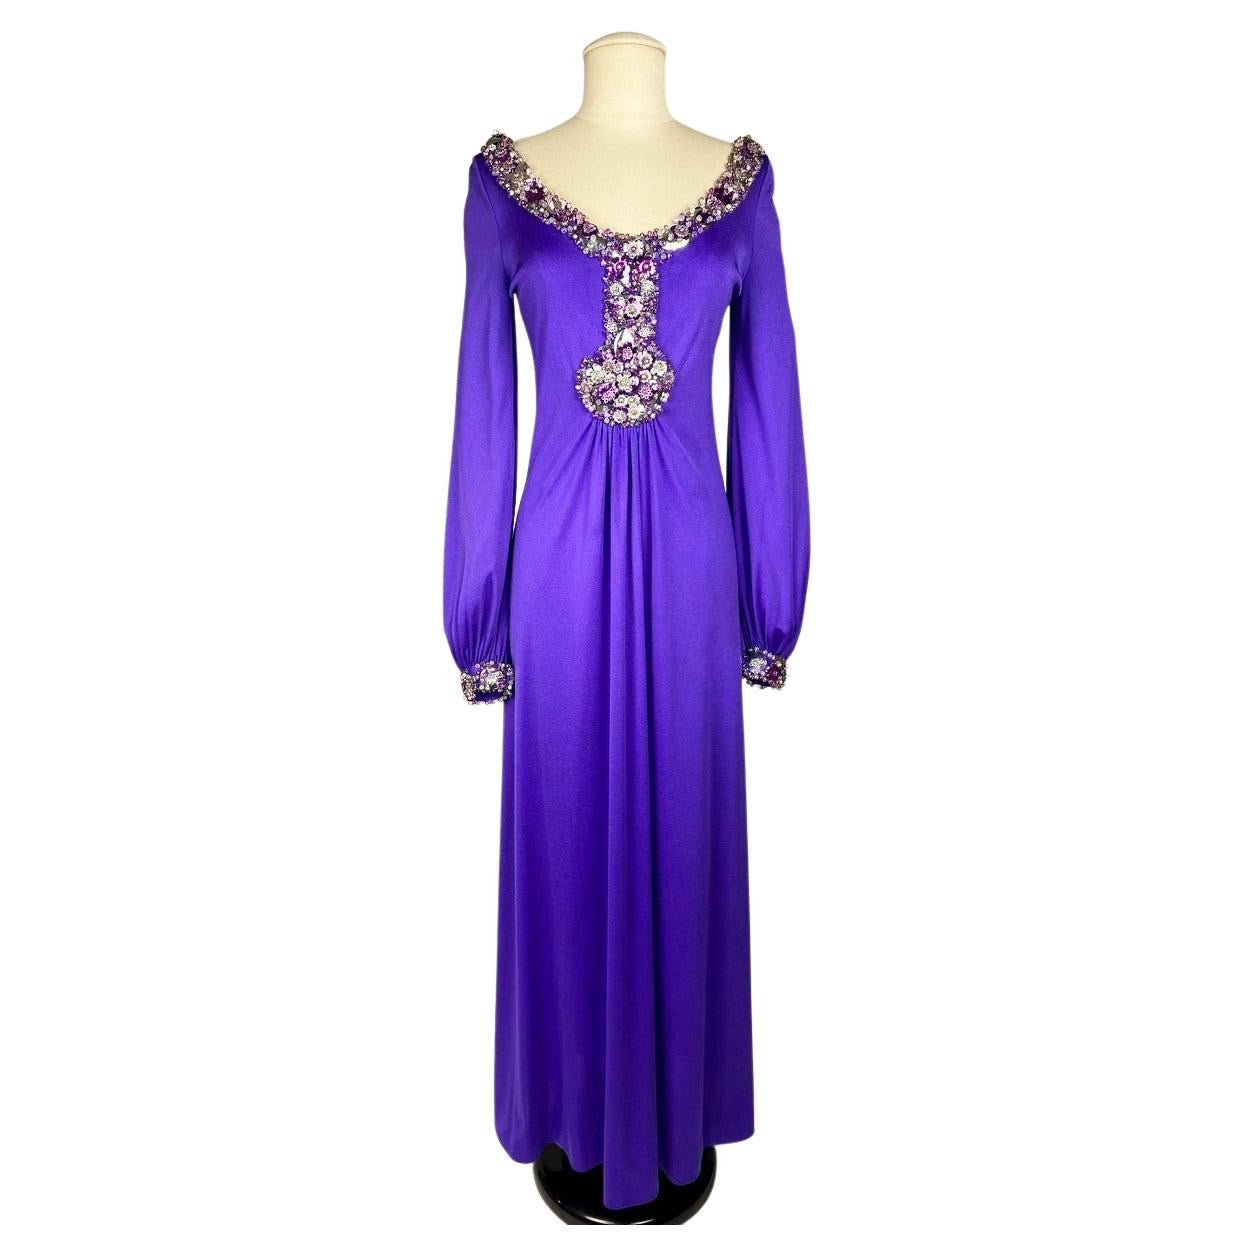 A Loris Azzaro Couture Robe de soirée à bijoux violets Circa 1970-1975